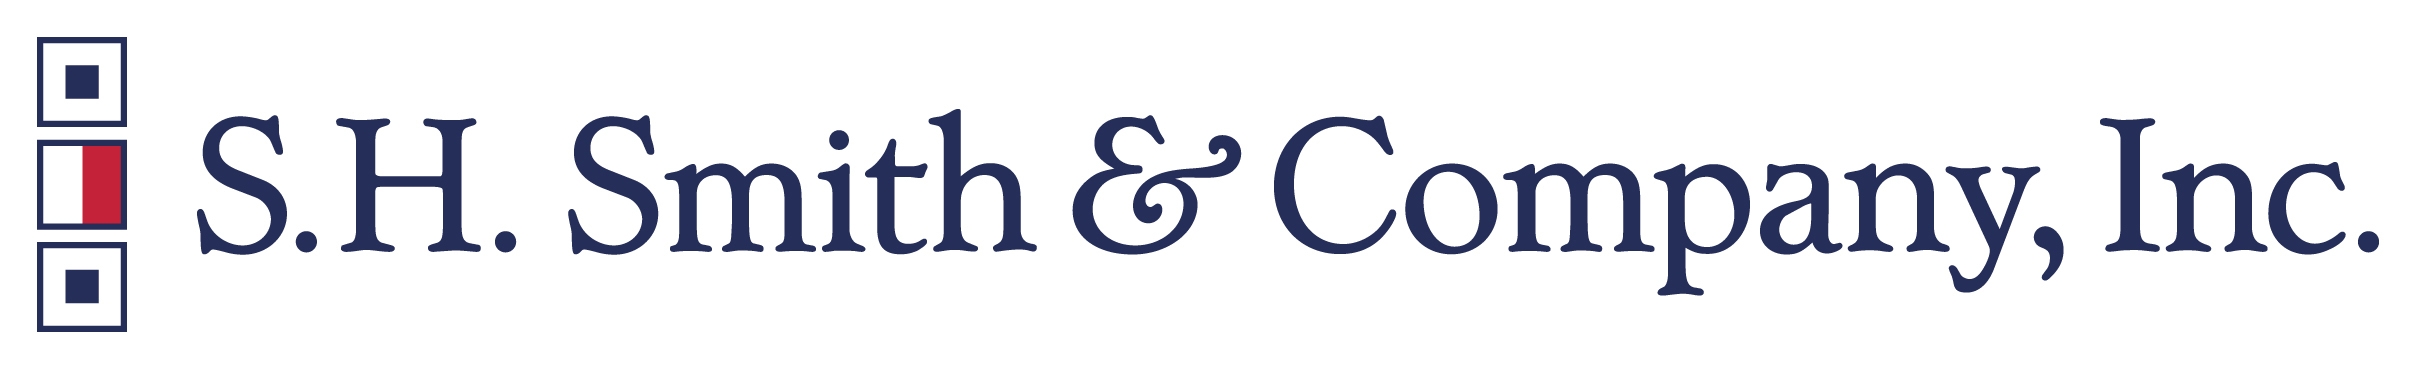 S.H. Smith & Company, Inc. logo